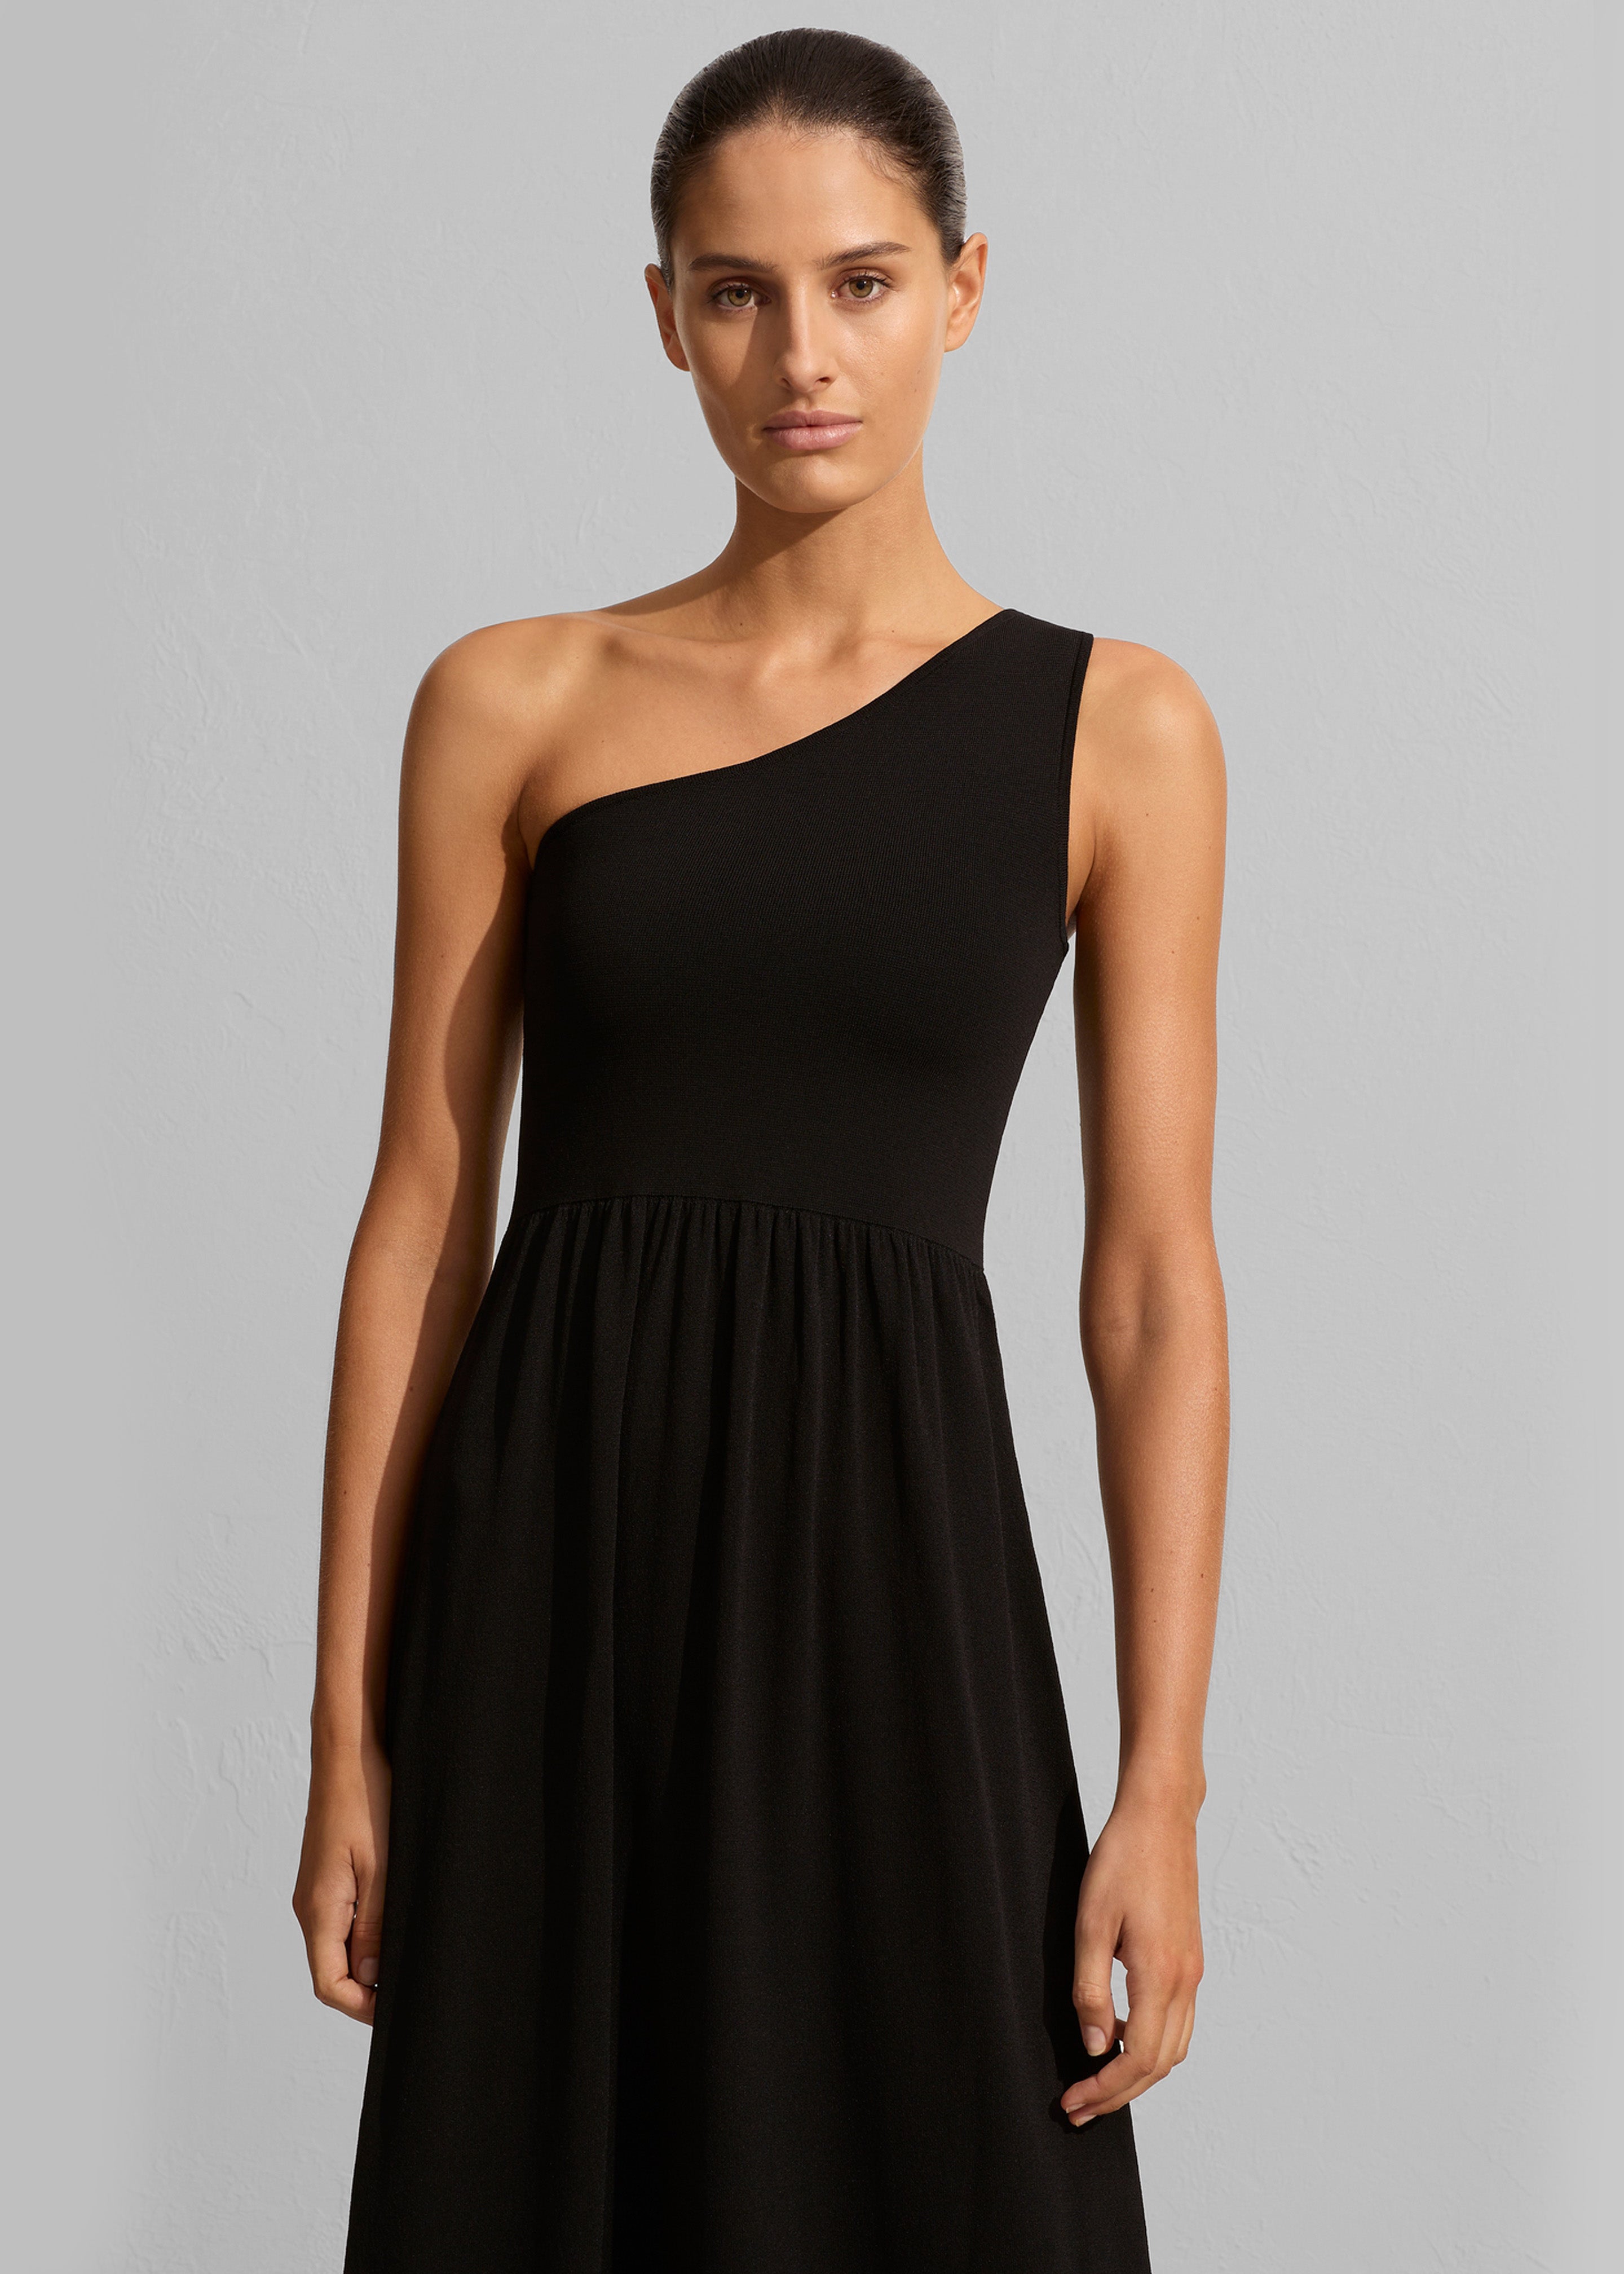 Matteau Asymmetric Knit Dress - Black - 2